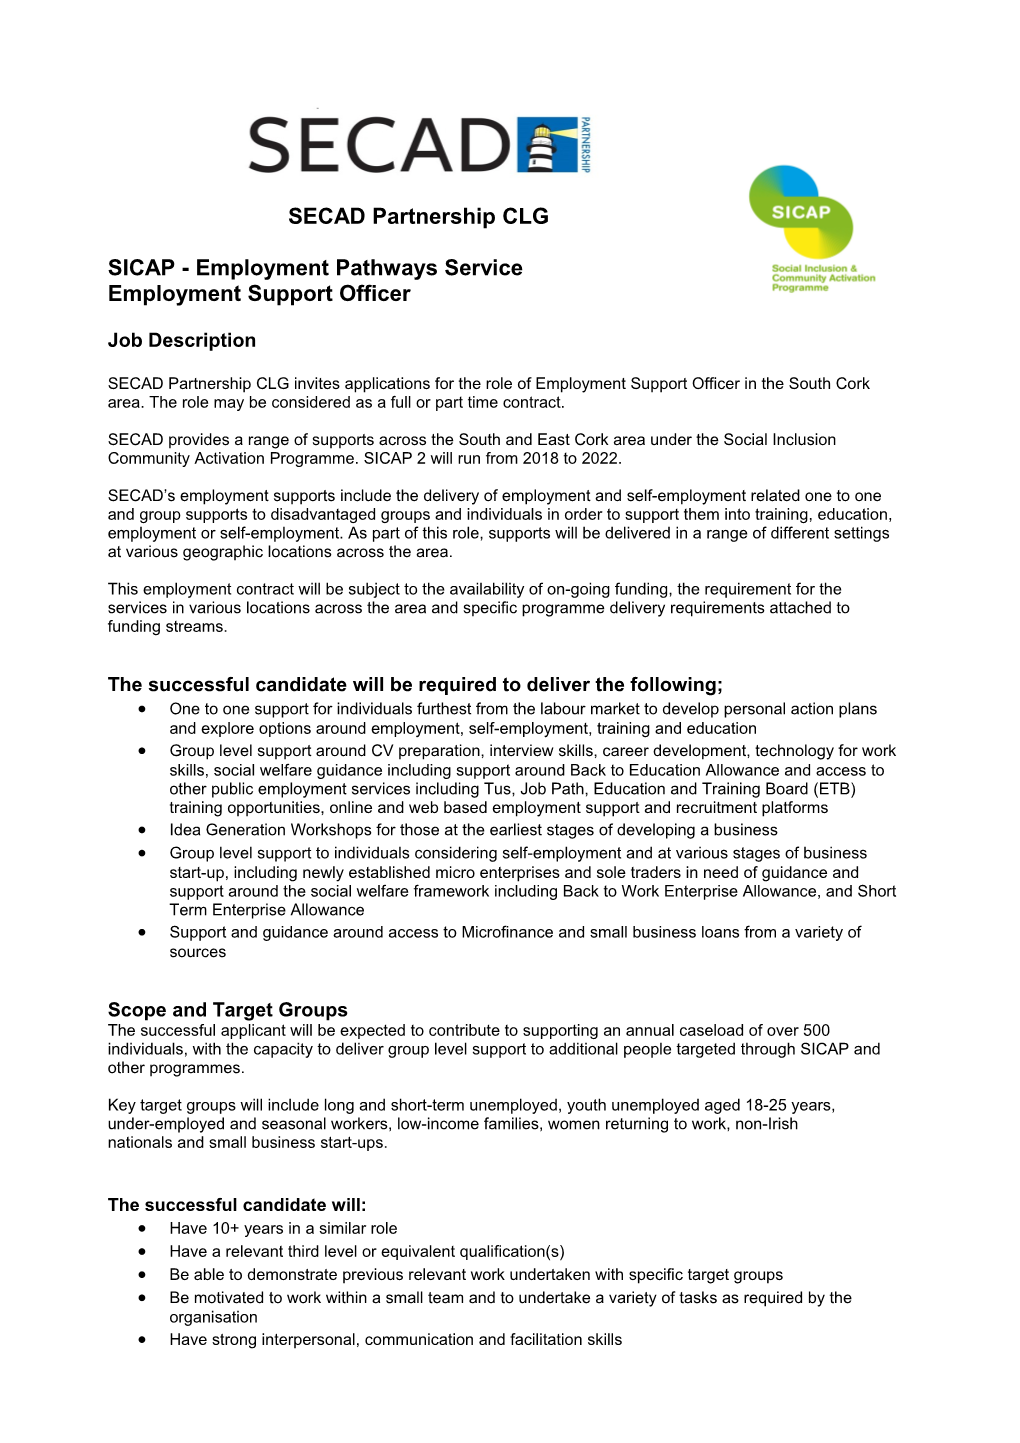 SICAP - Employment Pathways Service